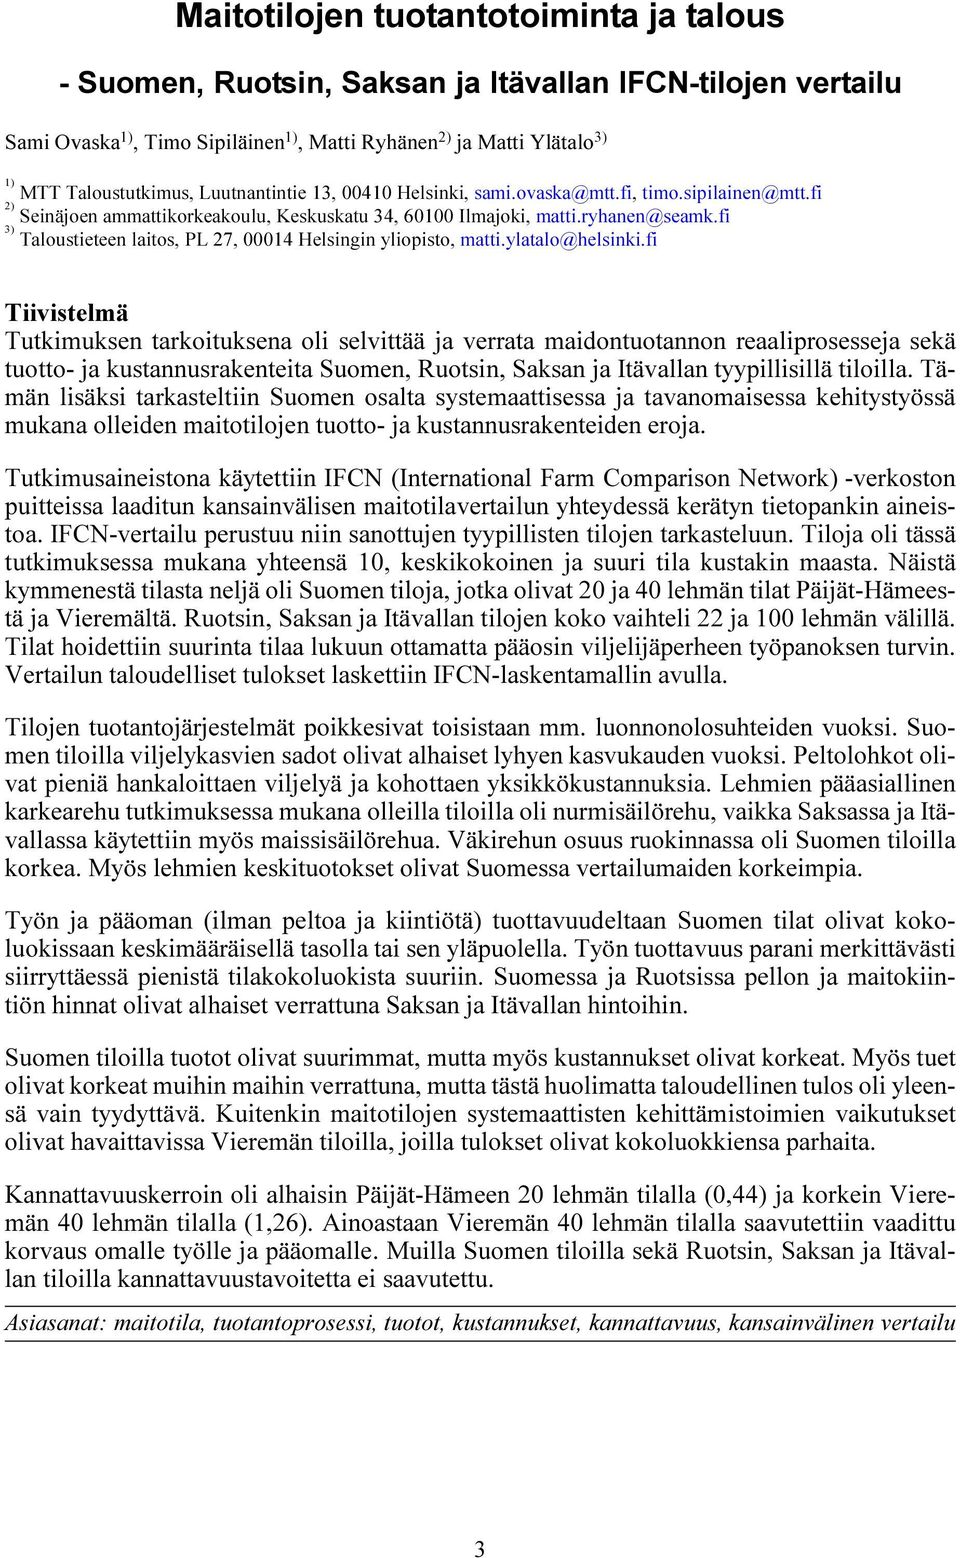 fi 3) Taloustieteen laitos, PL 27, 00014 Helsingin yliopisto, matti.ylatalo@helsinki.